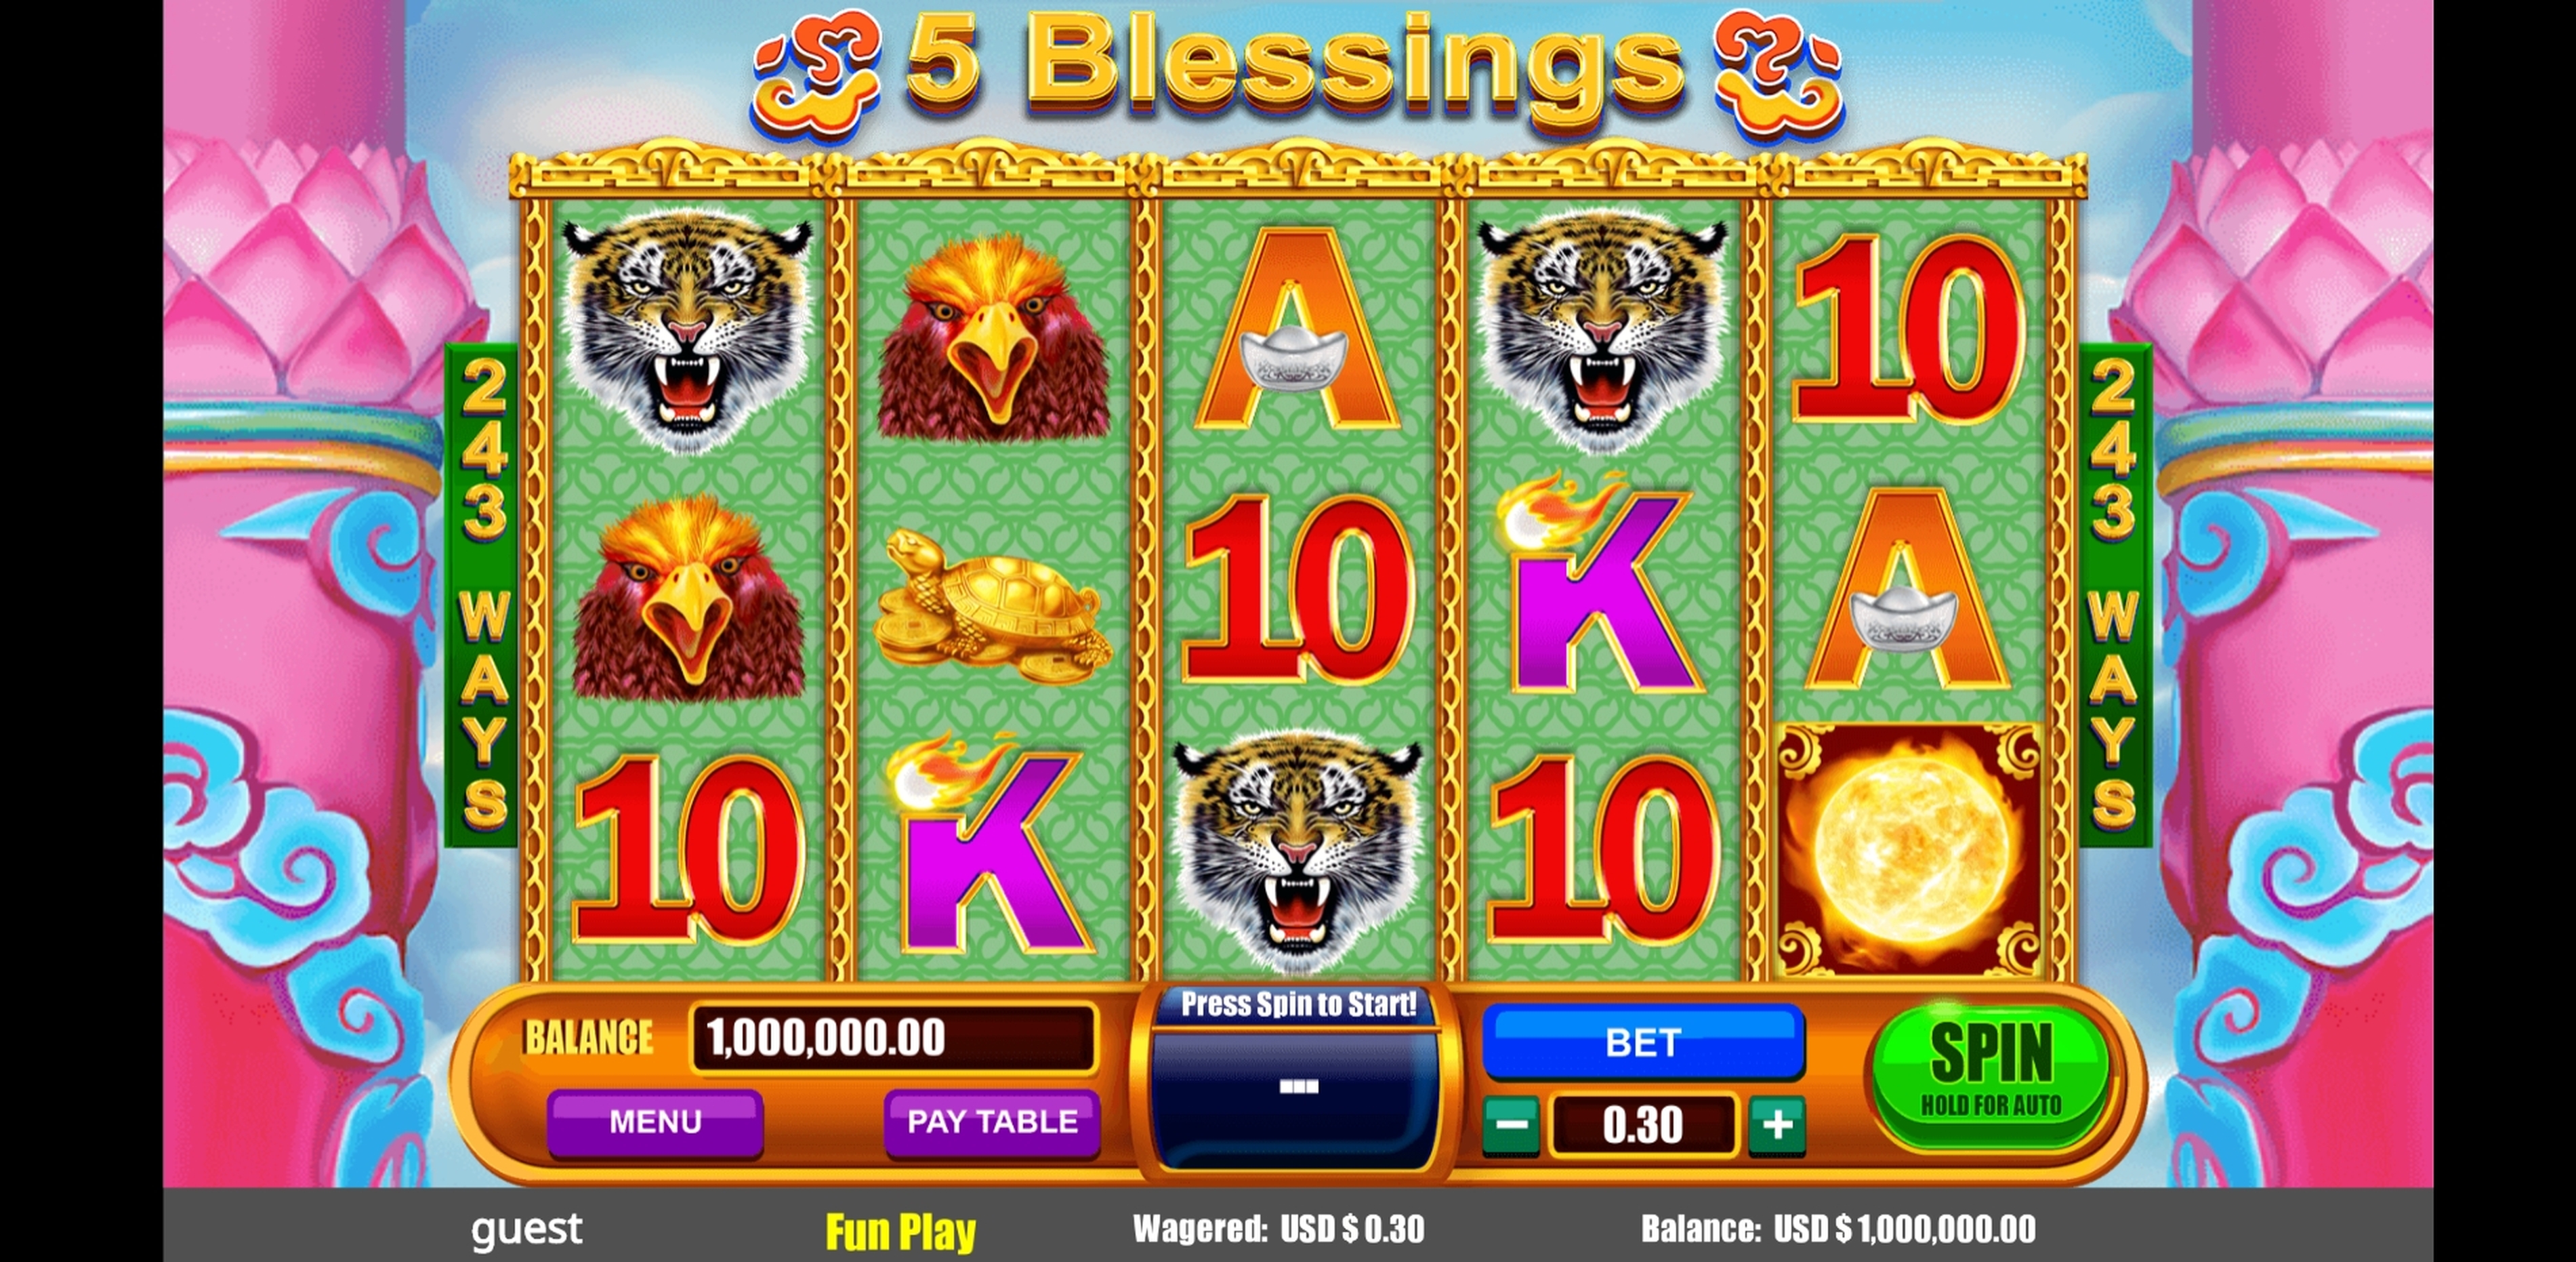 Reels in 5 Blessings Slot Game by August Gaming